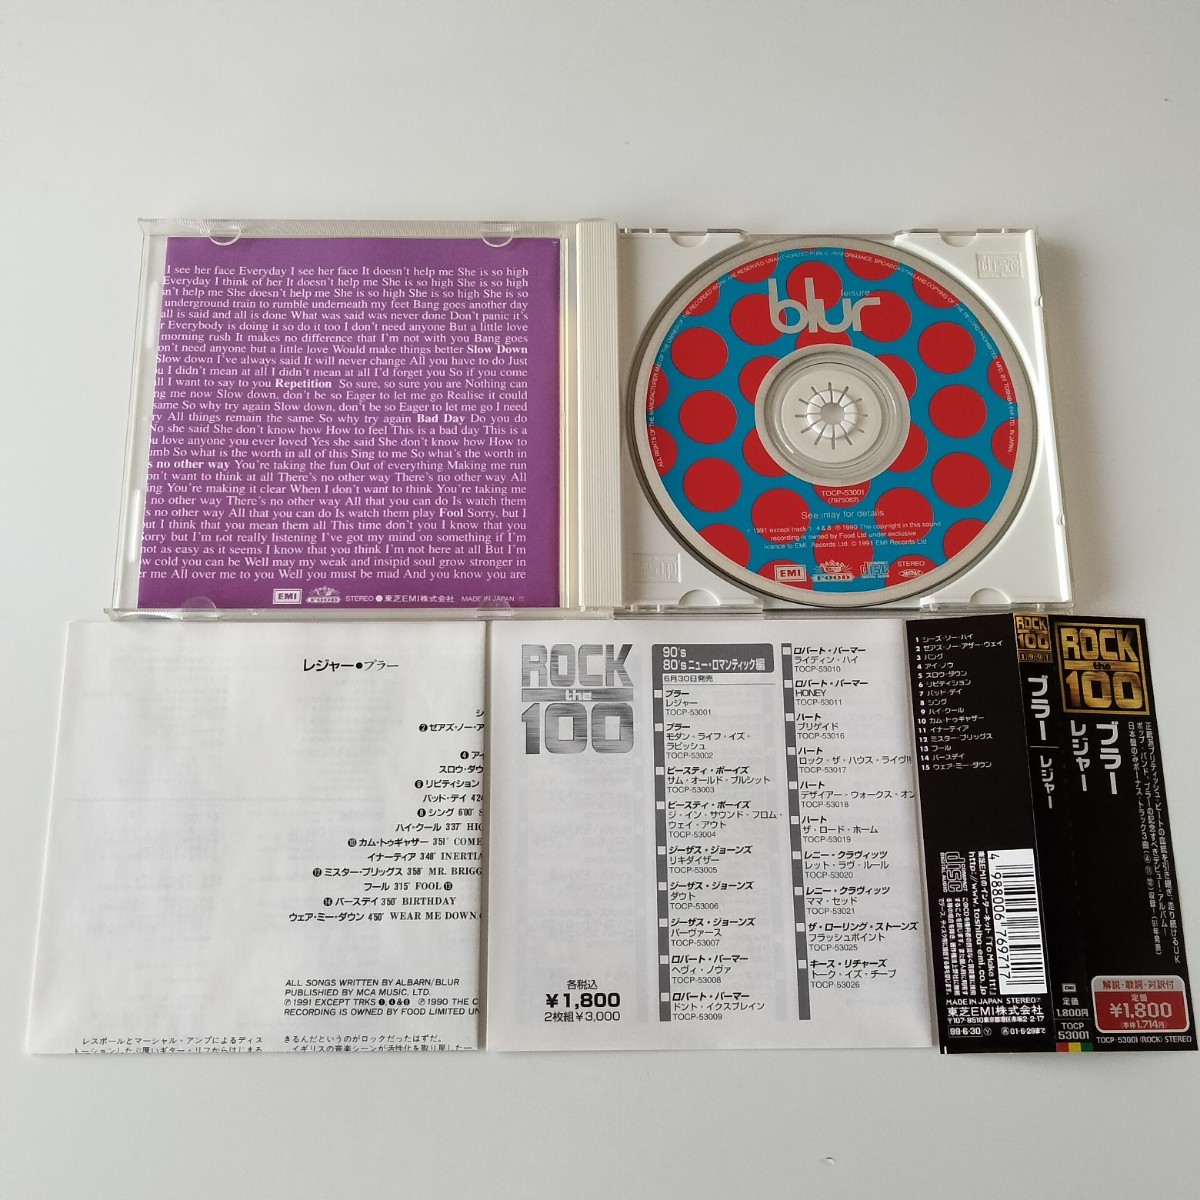 [ с лентой 99 год запись CD]BLUR/LEISURE(TOCP-53002)bla-/ отдых /91 год 1st записано в Японии / бонус грузовик 3 искривление /Damon AlbarnGraham Coxon